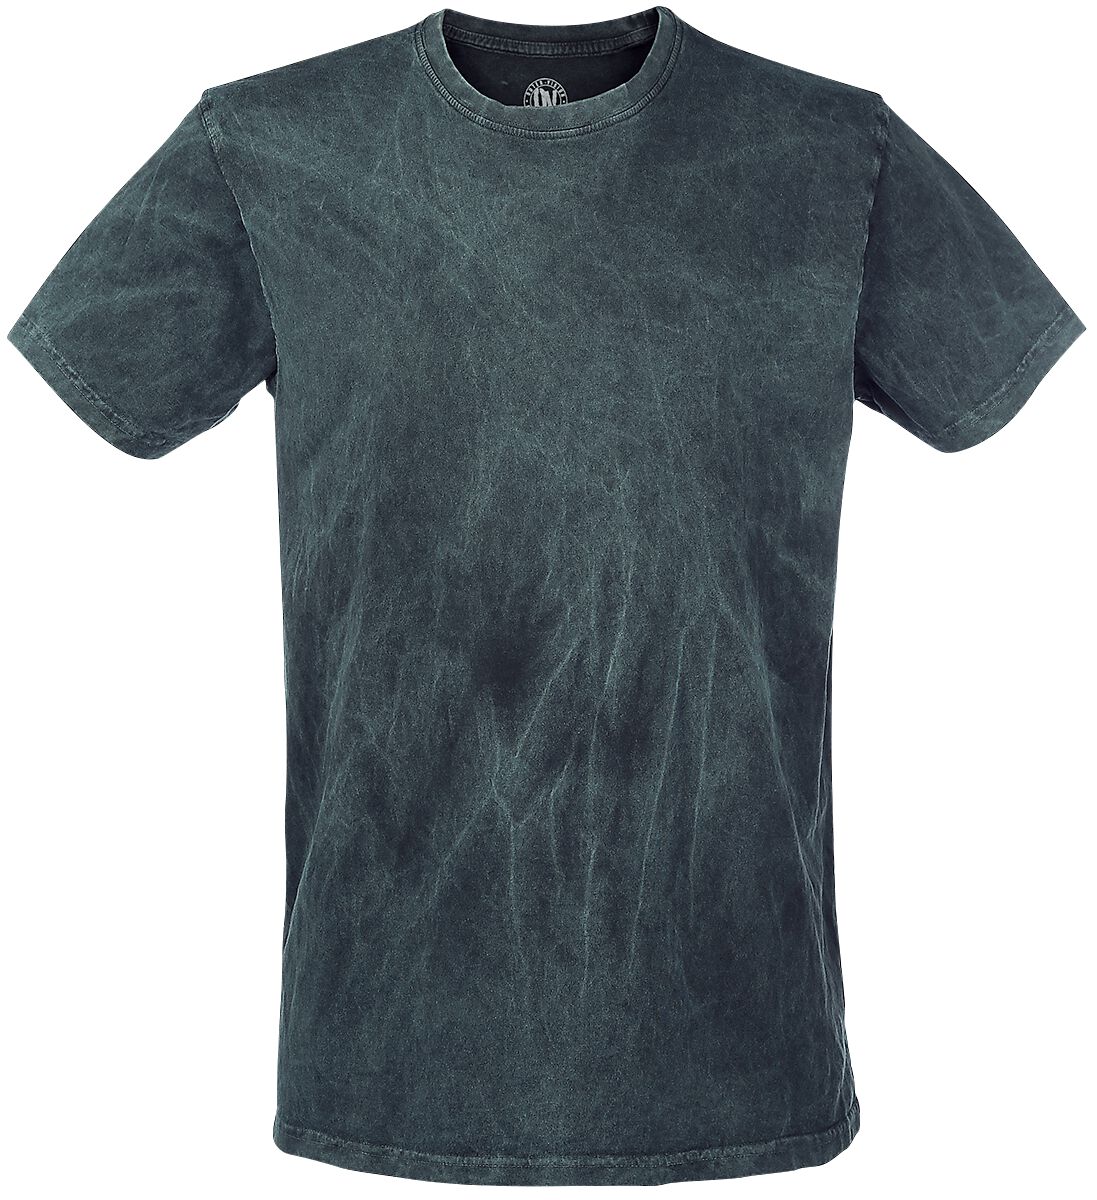 Outer Vision T-Shirt - Vintage - S bis XXL - für Männer - Größe XXL - petrol